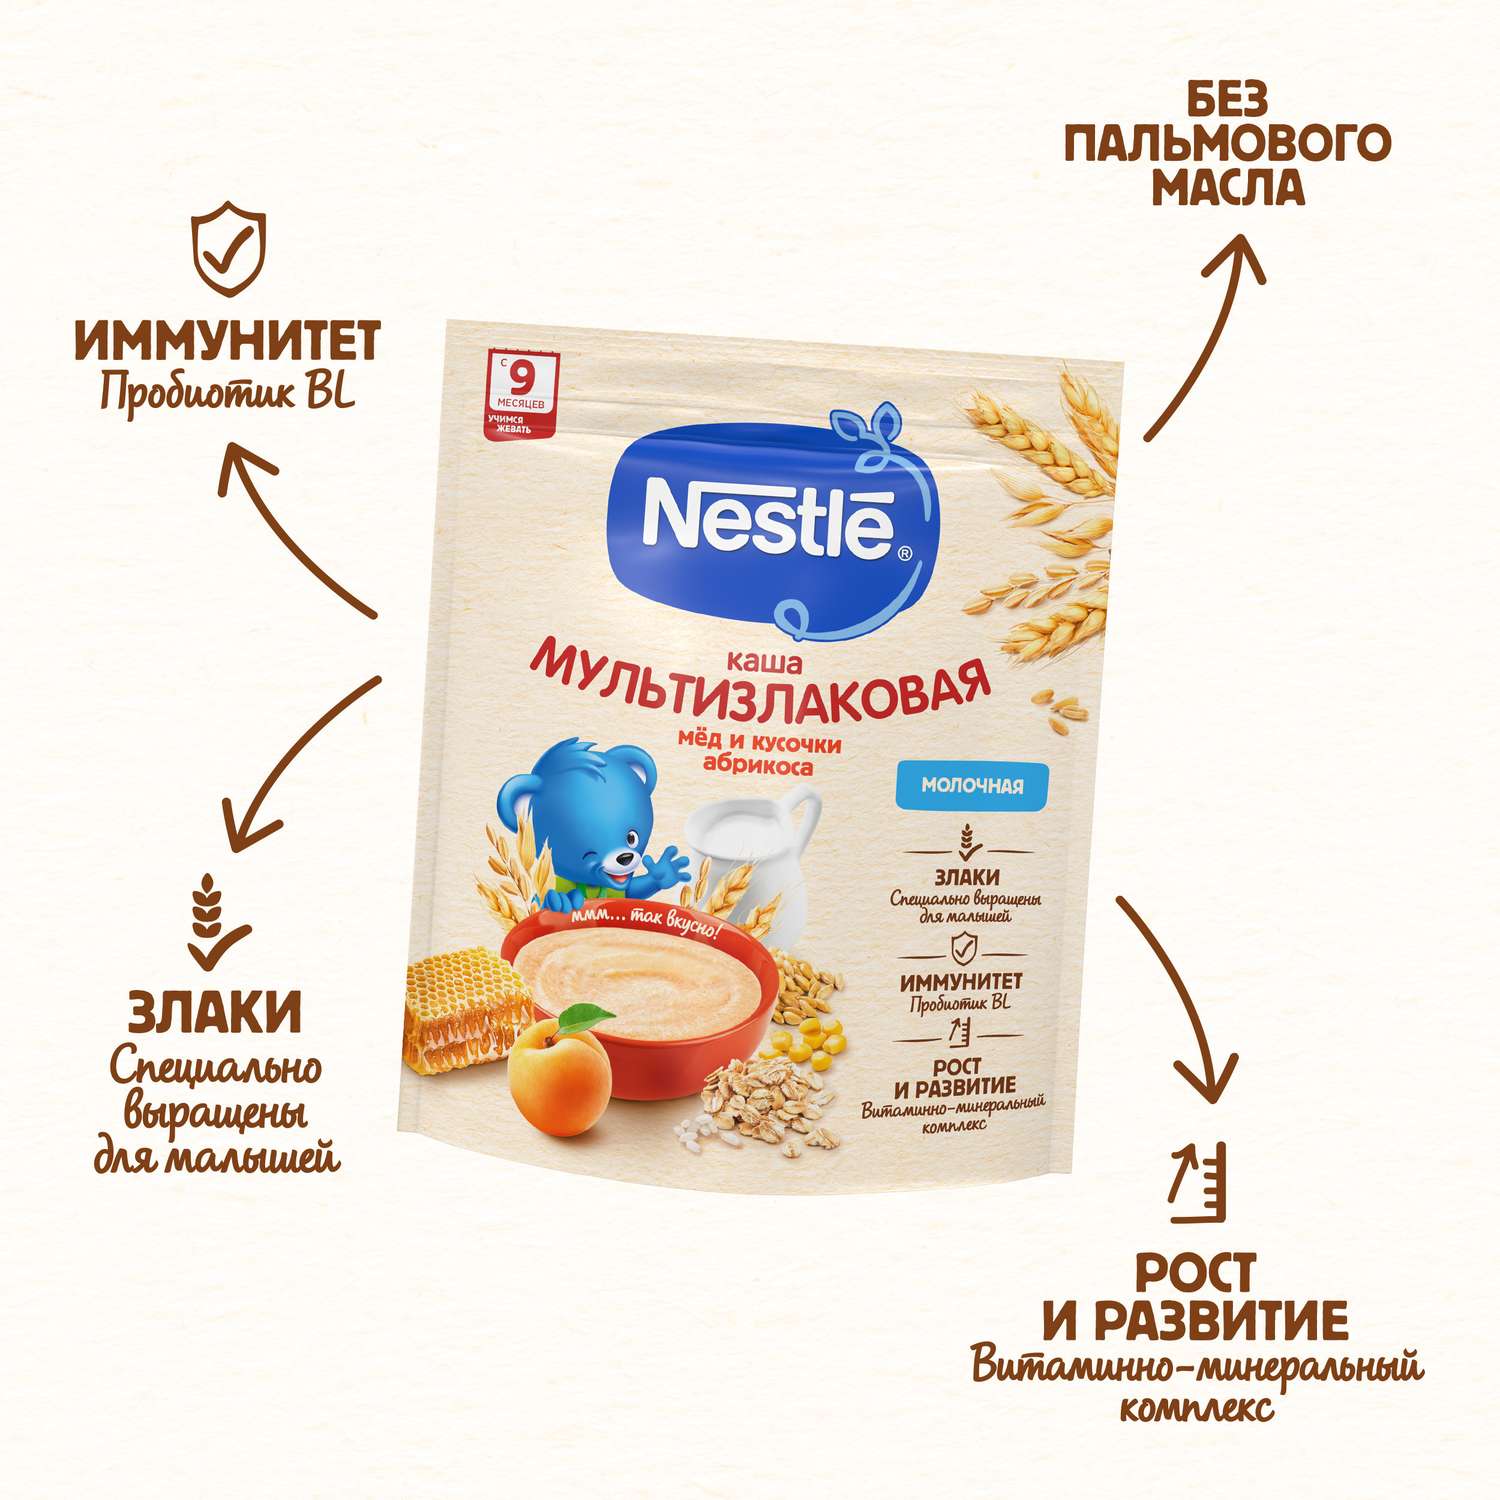 Каша молочная Nestle мультизлаковая мед-абрикос 200г с 9месяцев - фото 4